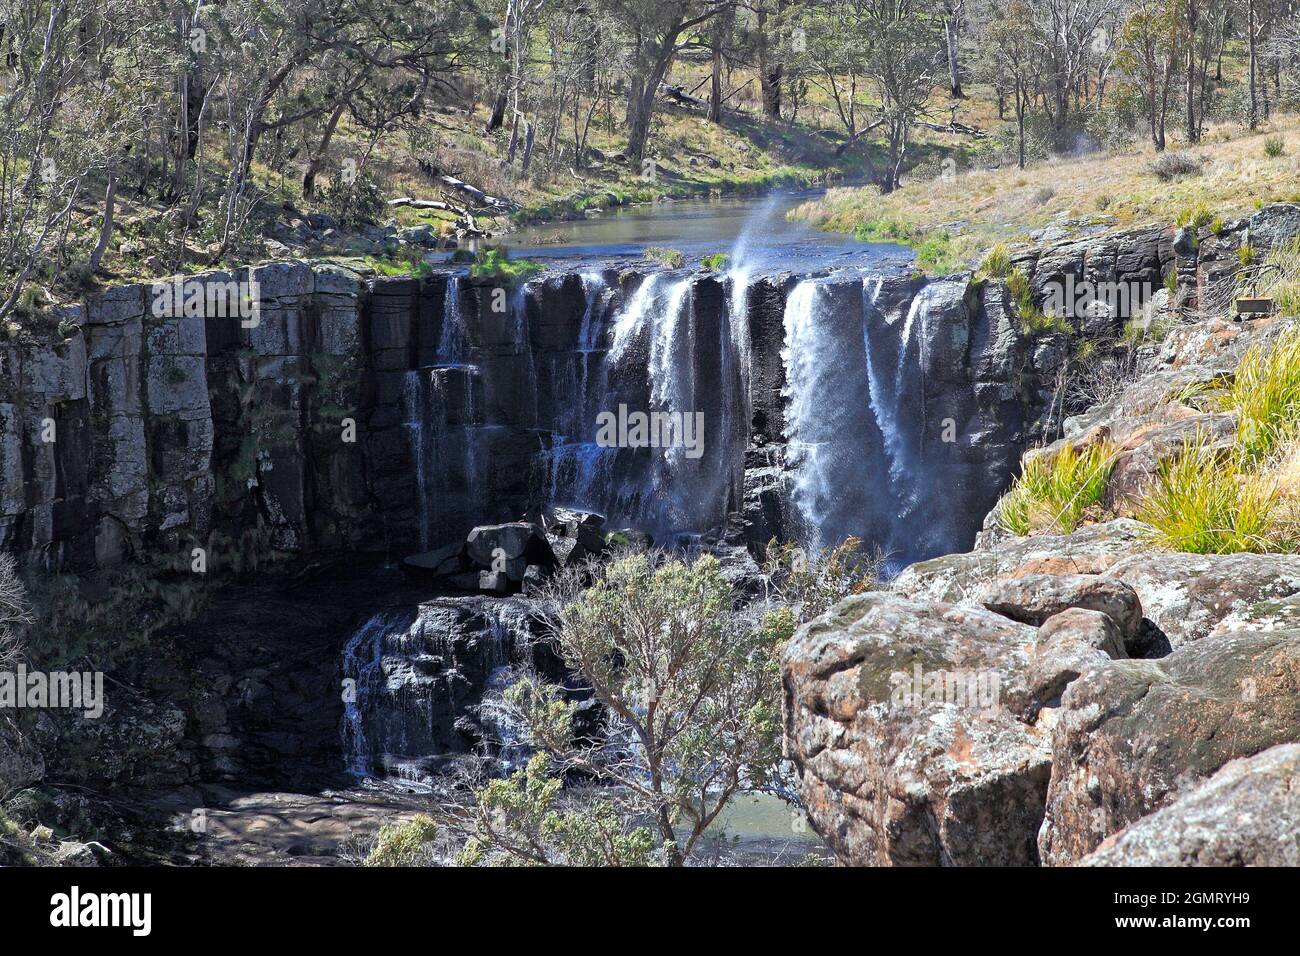 Upper Ebor Falls, im Guy Fawkes River National Park, Es gab starken Wind, der das Wasser im Wasserfall in die Luft sprengte. Stockfoto